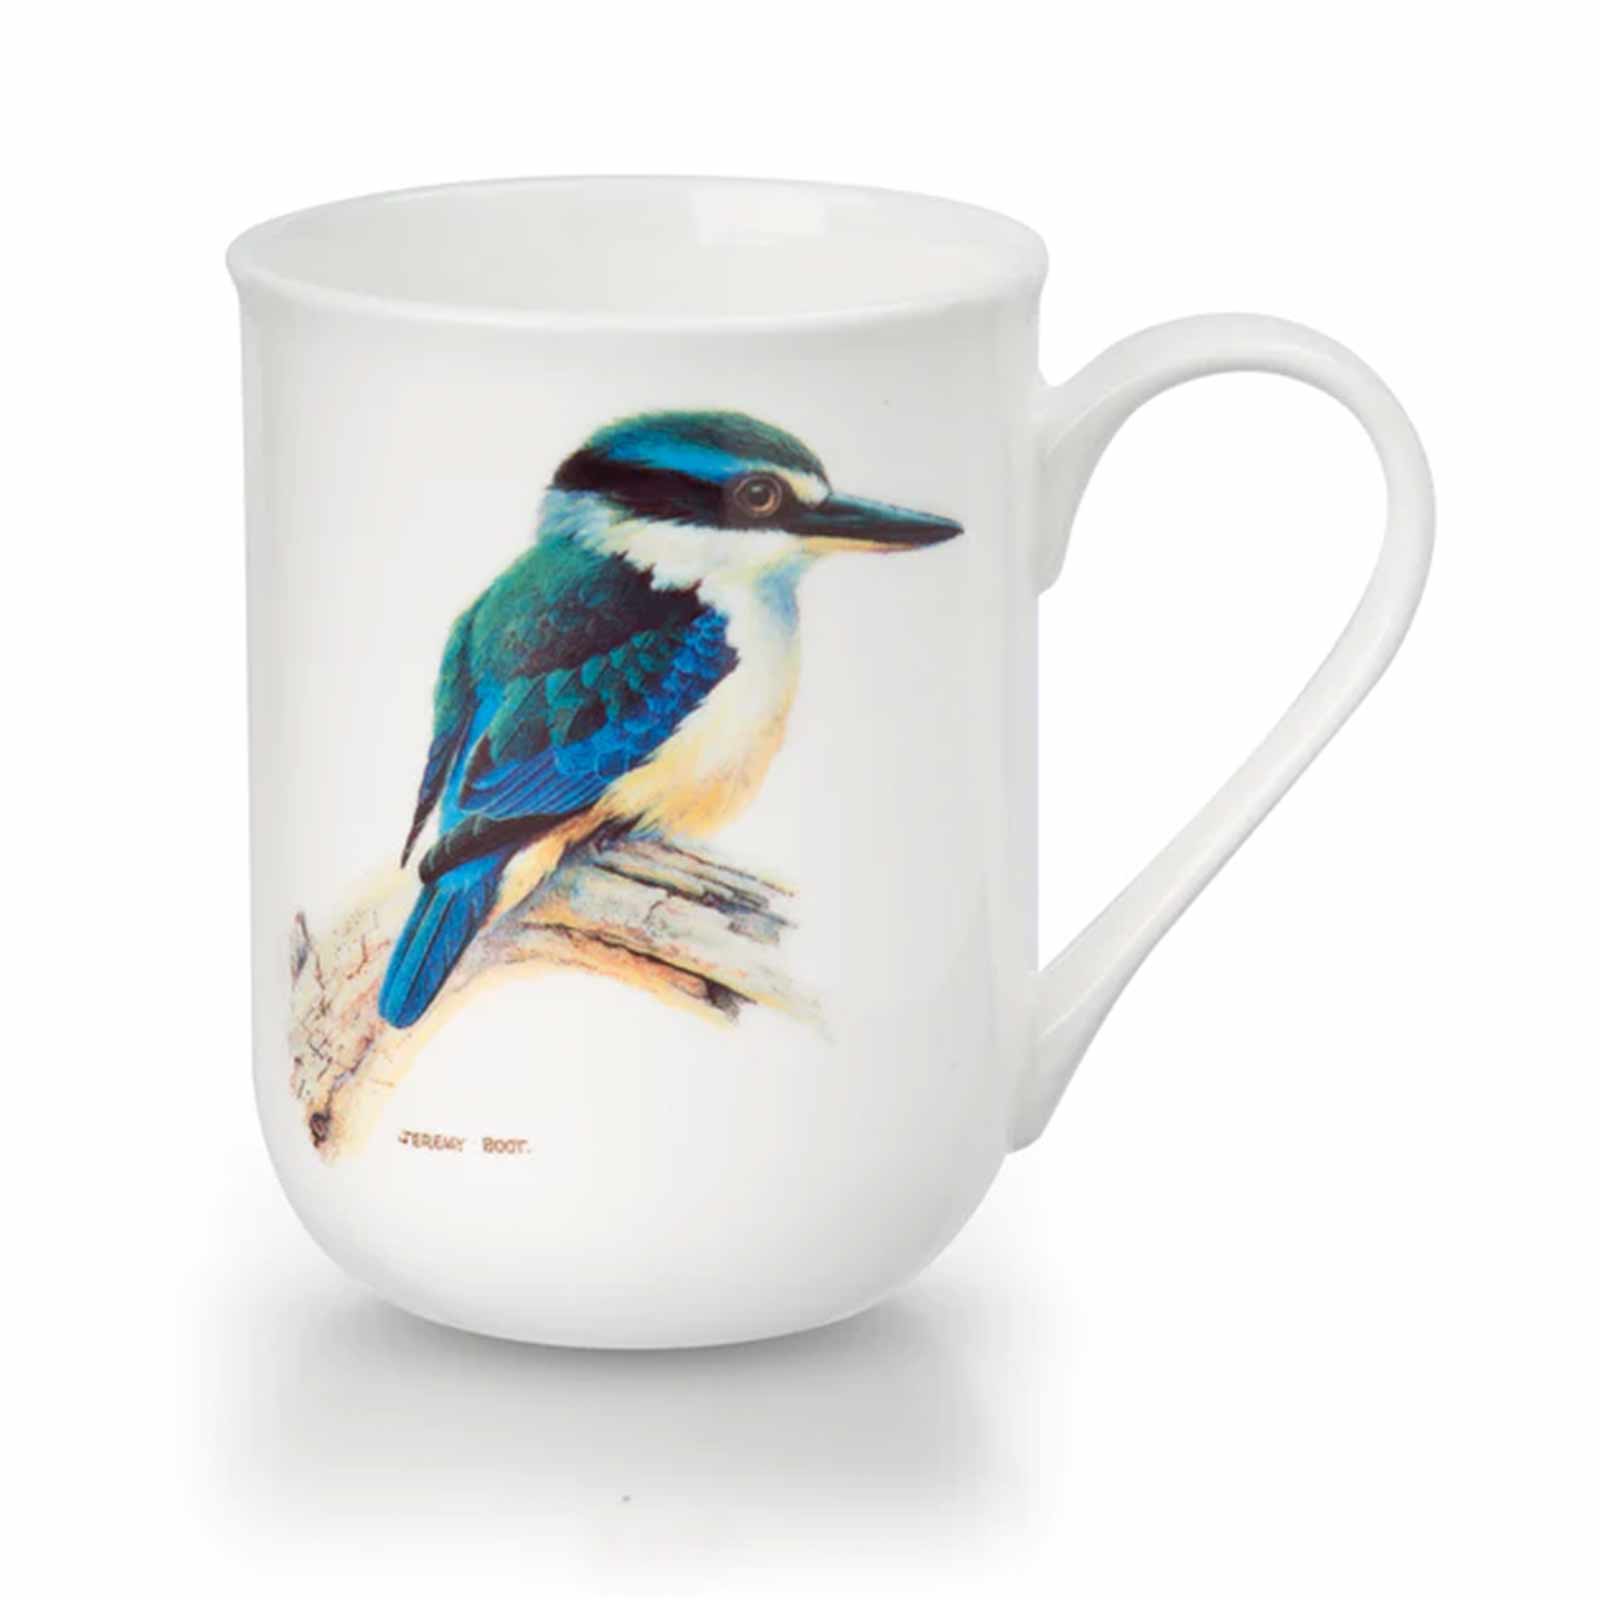 Jeremy Boot Sacred Kingfisher Birds of Australia Boxed Bone China Mug